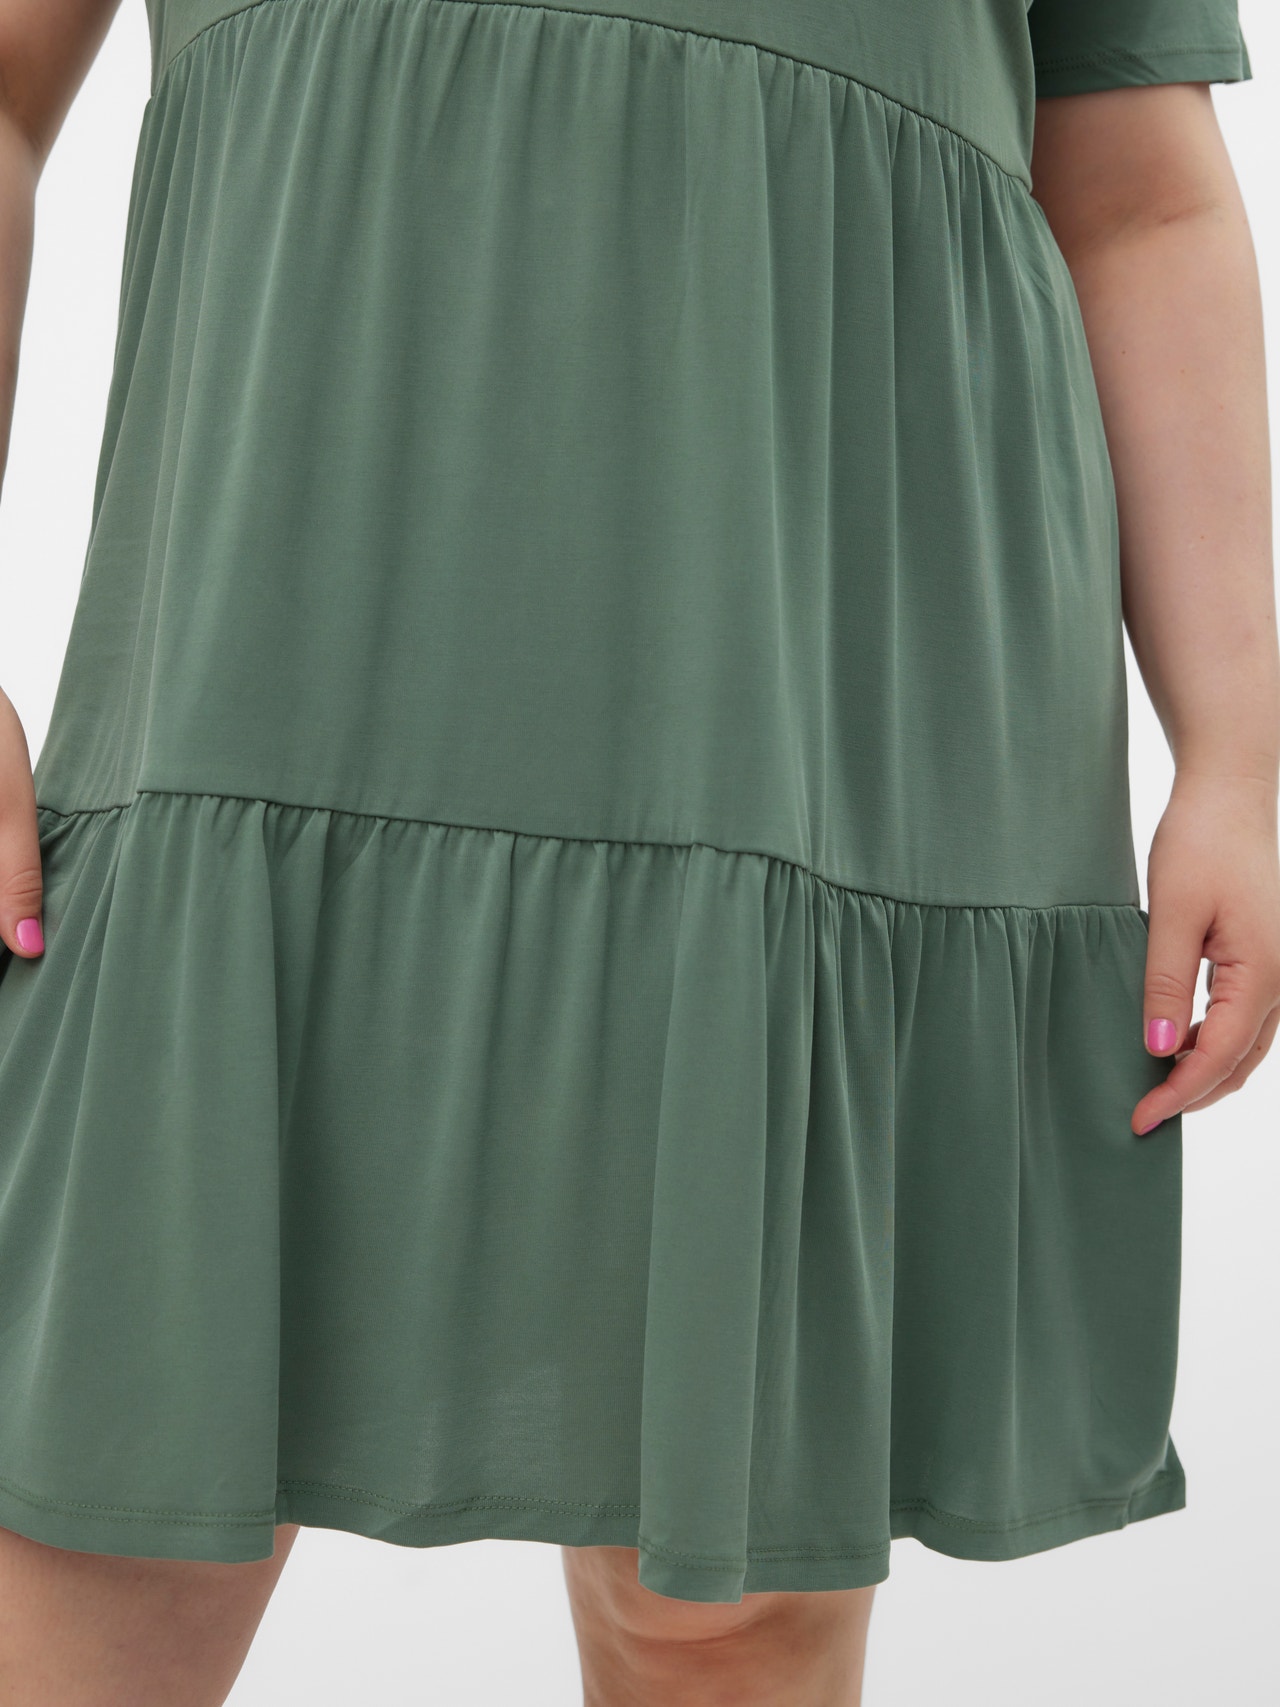 Vero Moda VMFILLI Kort kjole -Laurel Wreath - 10271590